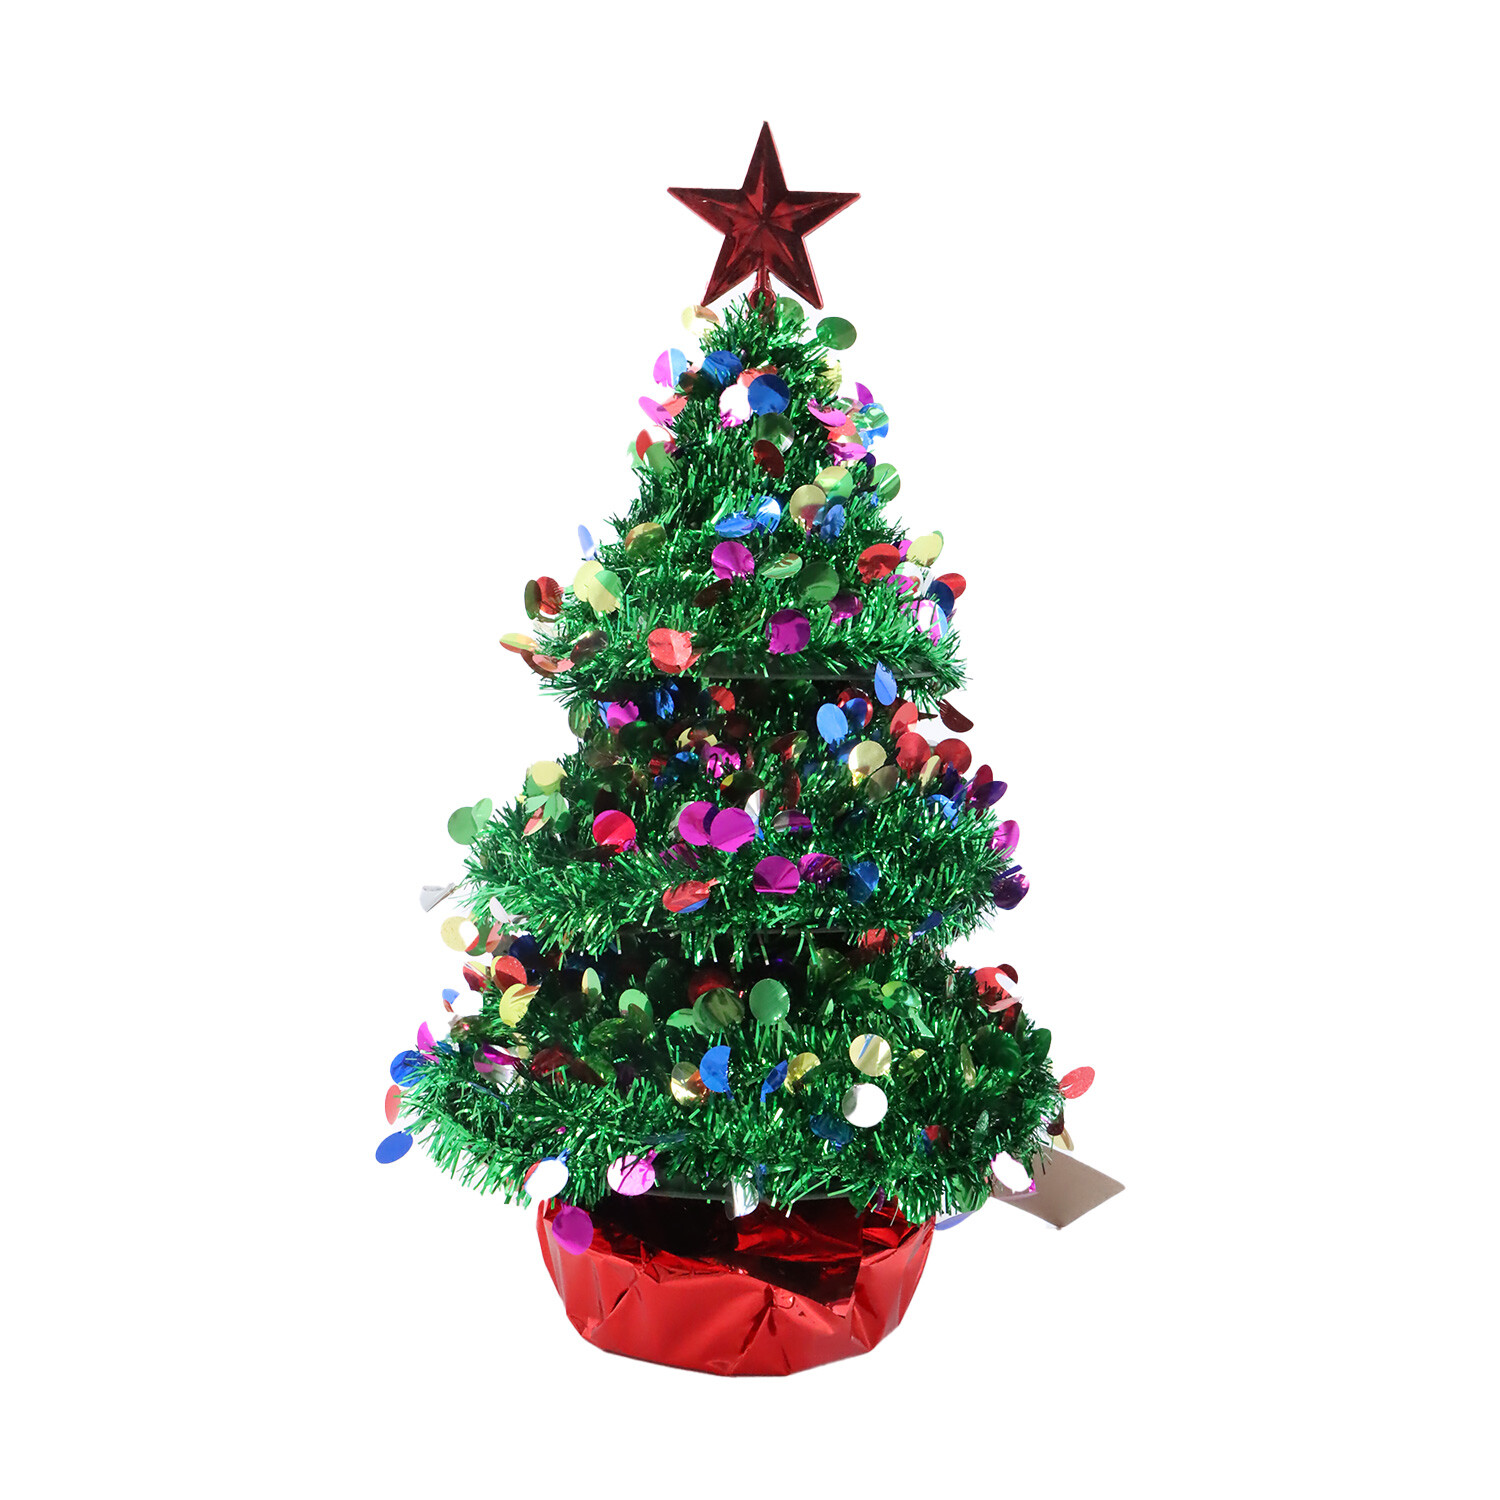 Tinsel Christmas Tree Image